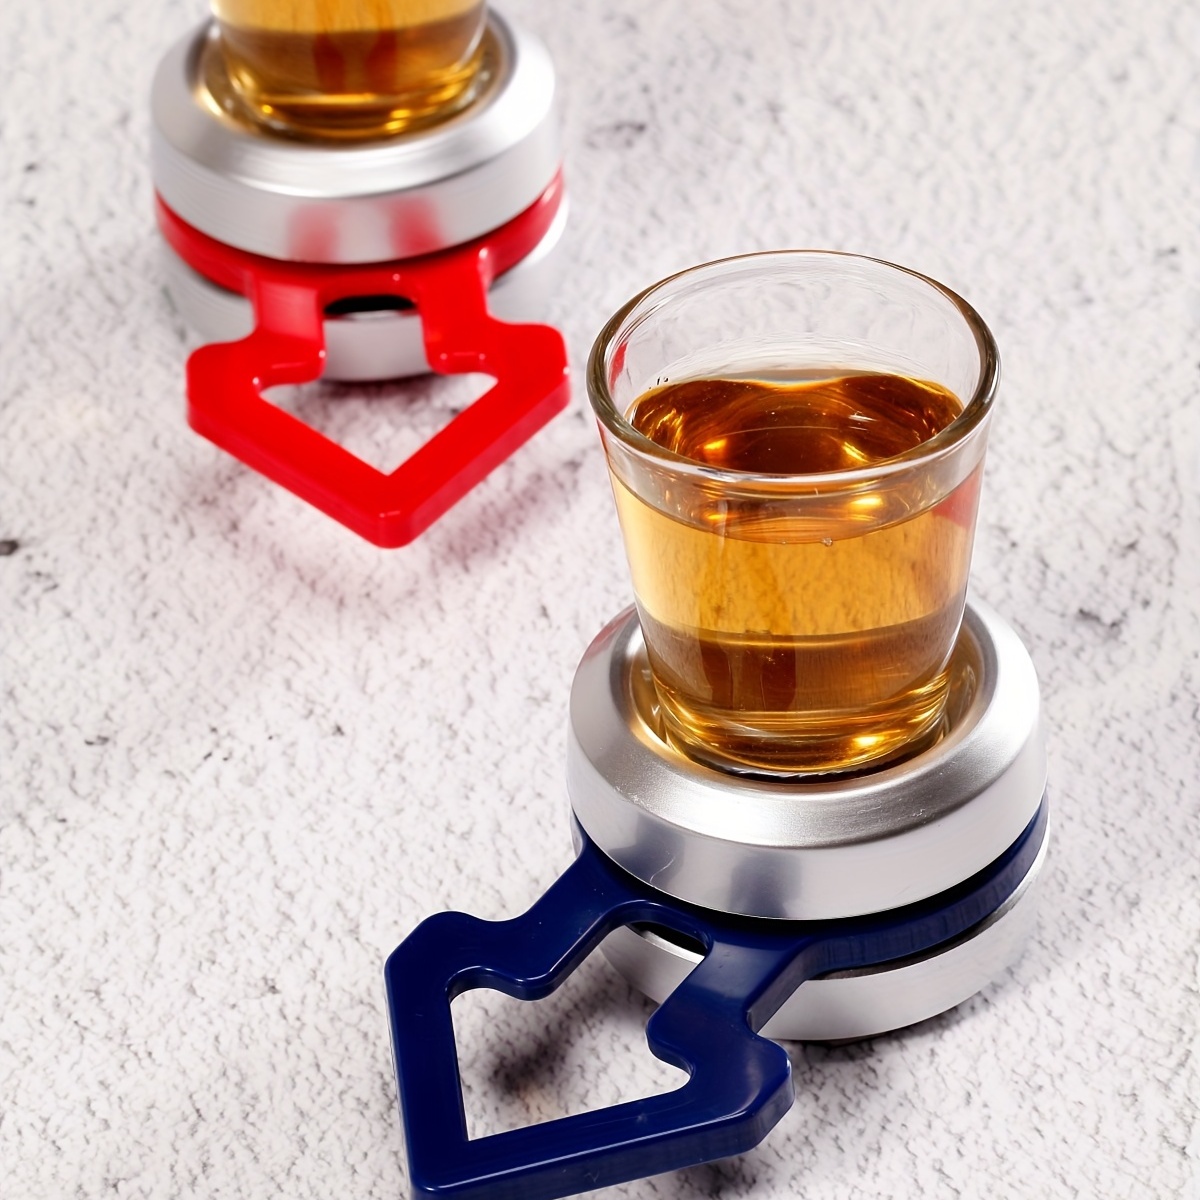 Studio Mercantile Spinner Shots Drinking Games Spinning wheel 4 shot glasses